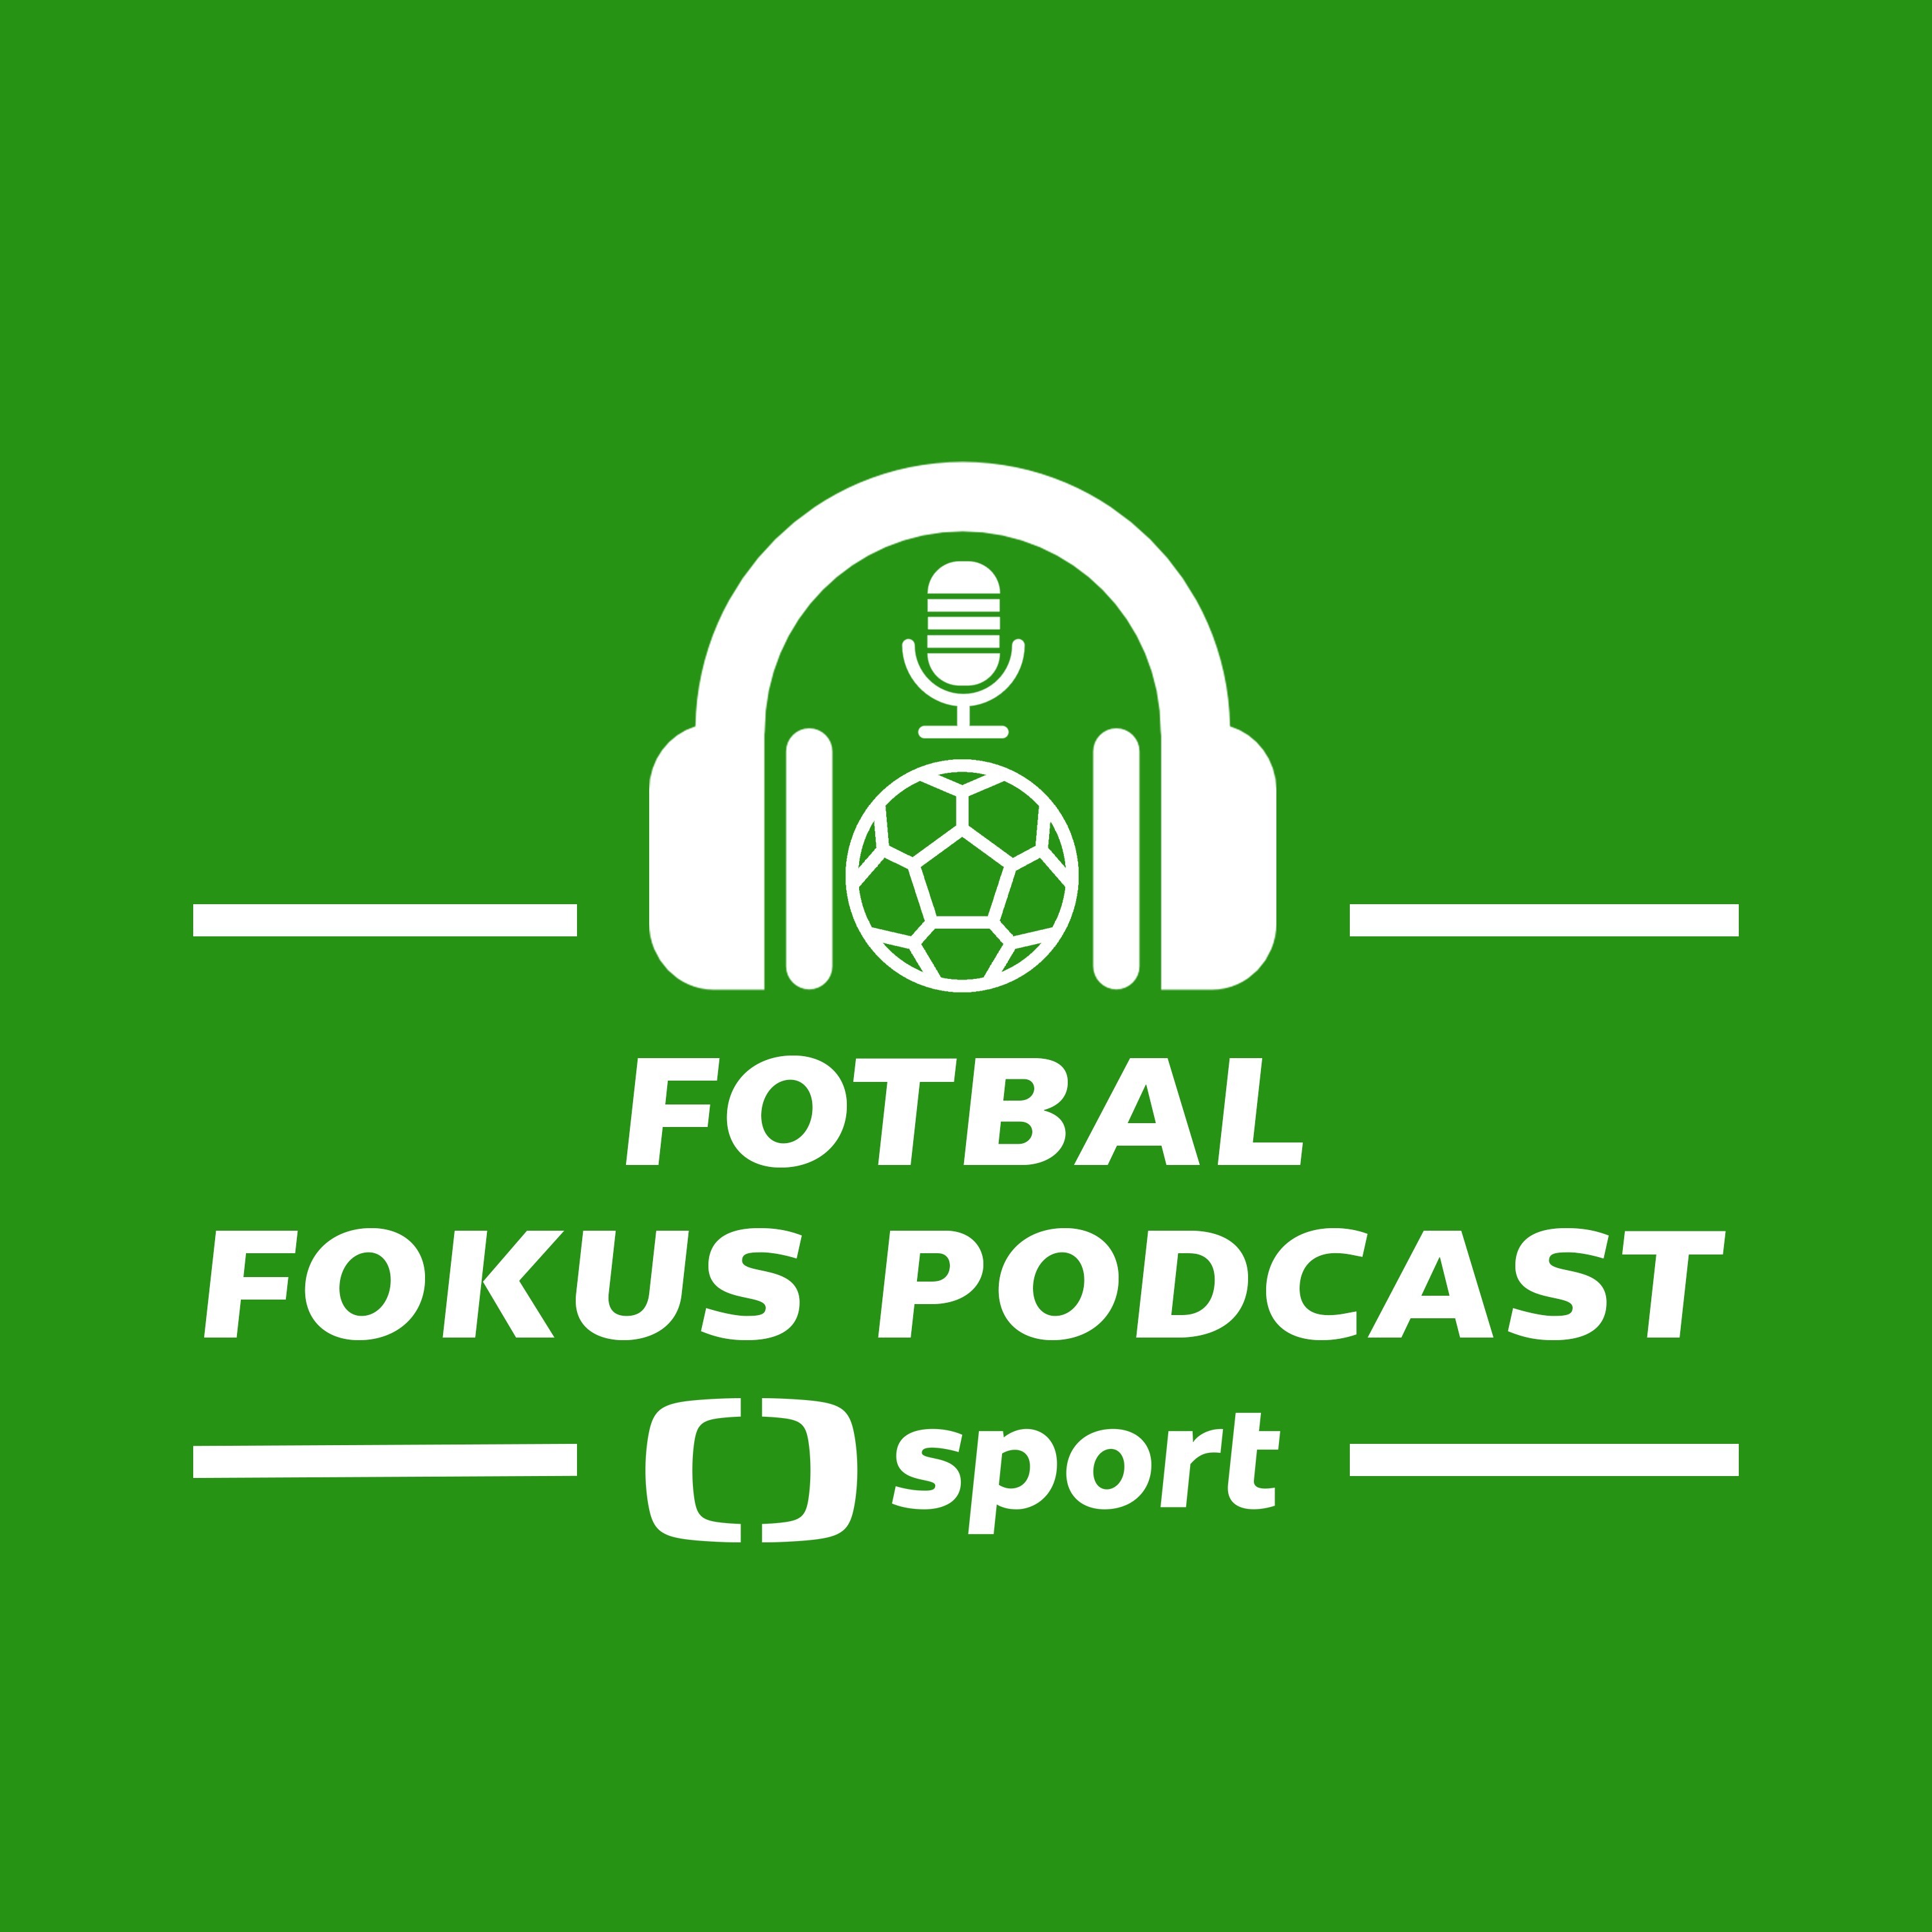 Fotbal fokus podcast: Proč se derby často mění ve válku a šlápli Drobný a Sivok s kritikou vedle?